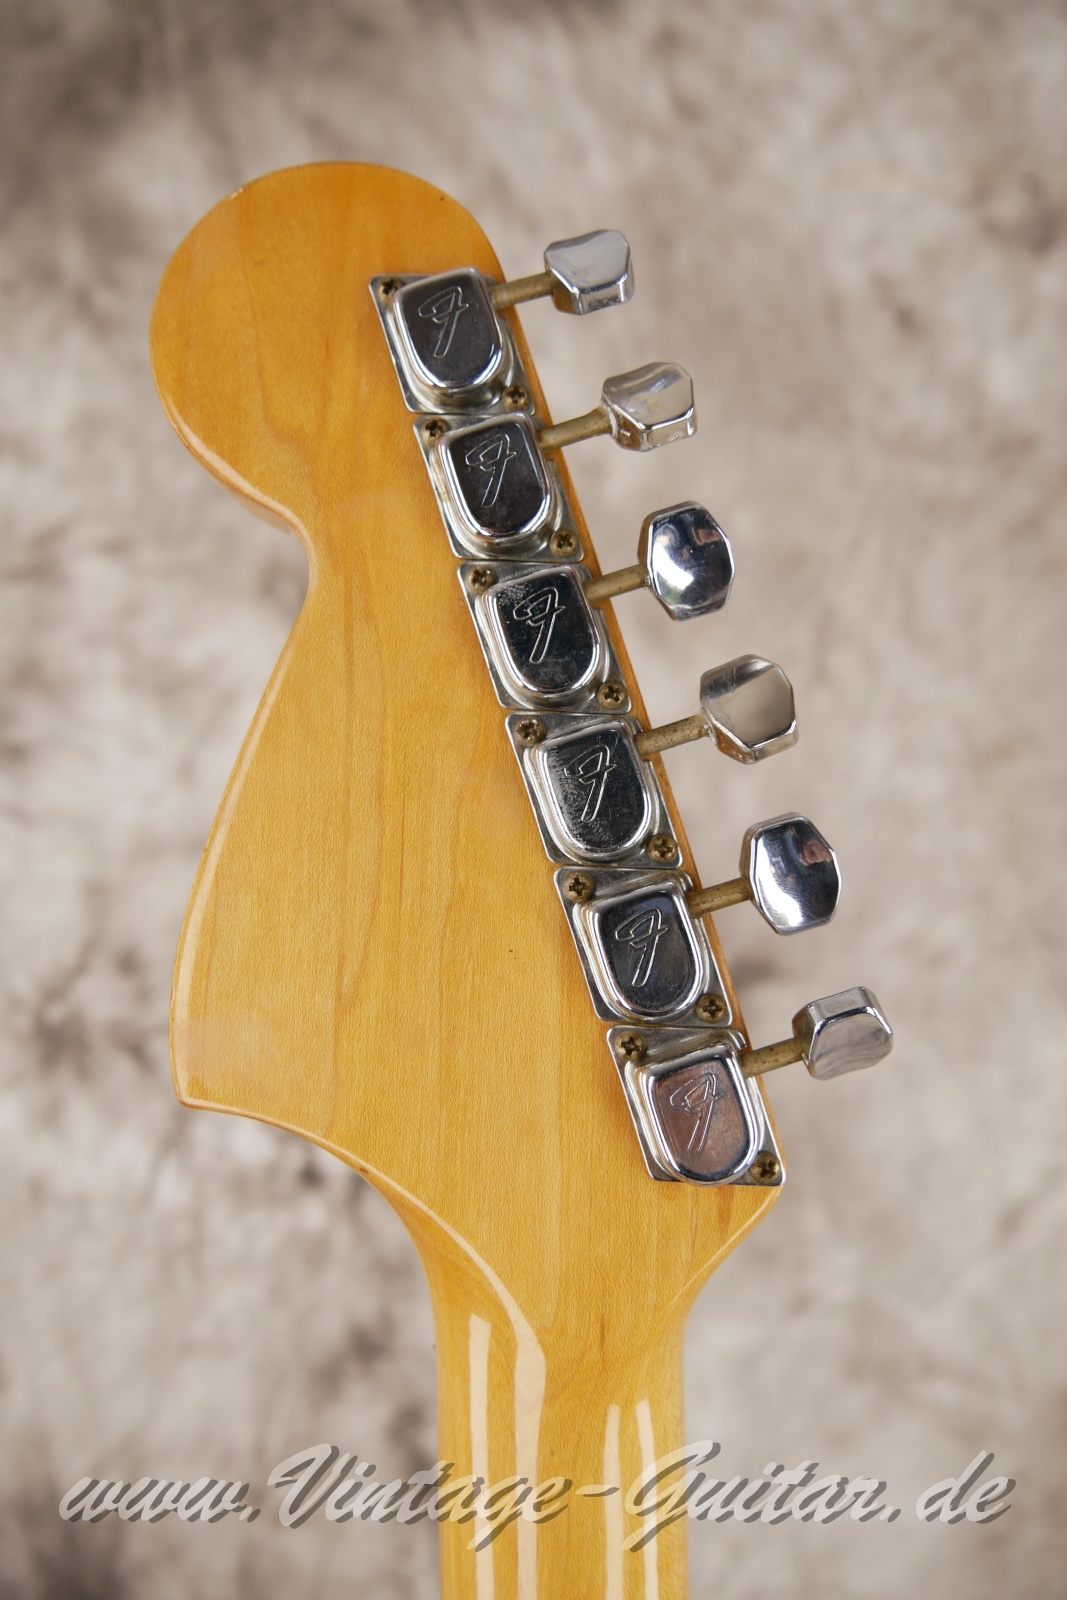 Fender_Stratocaster_sunburst_4hole_1971-004.JPG